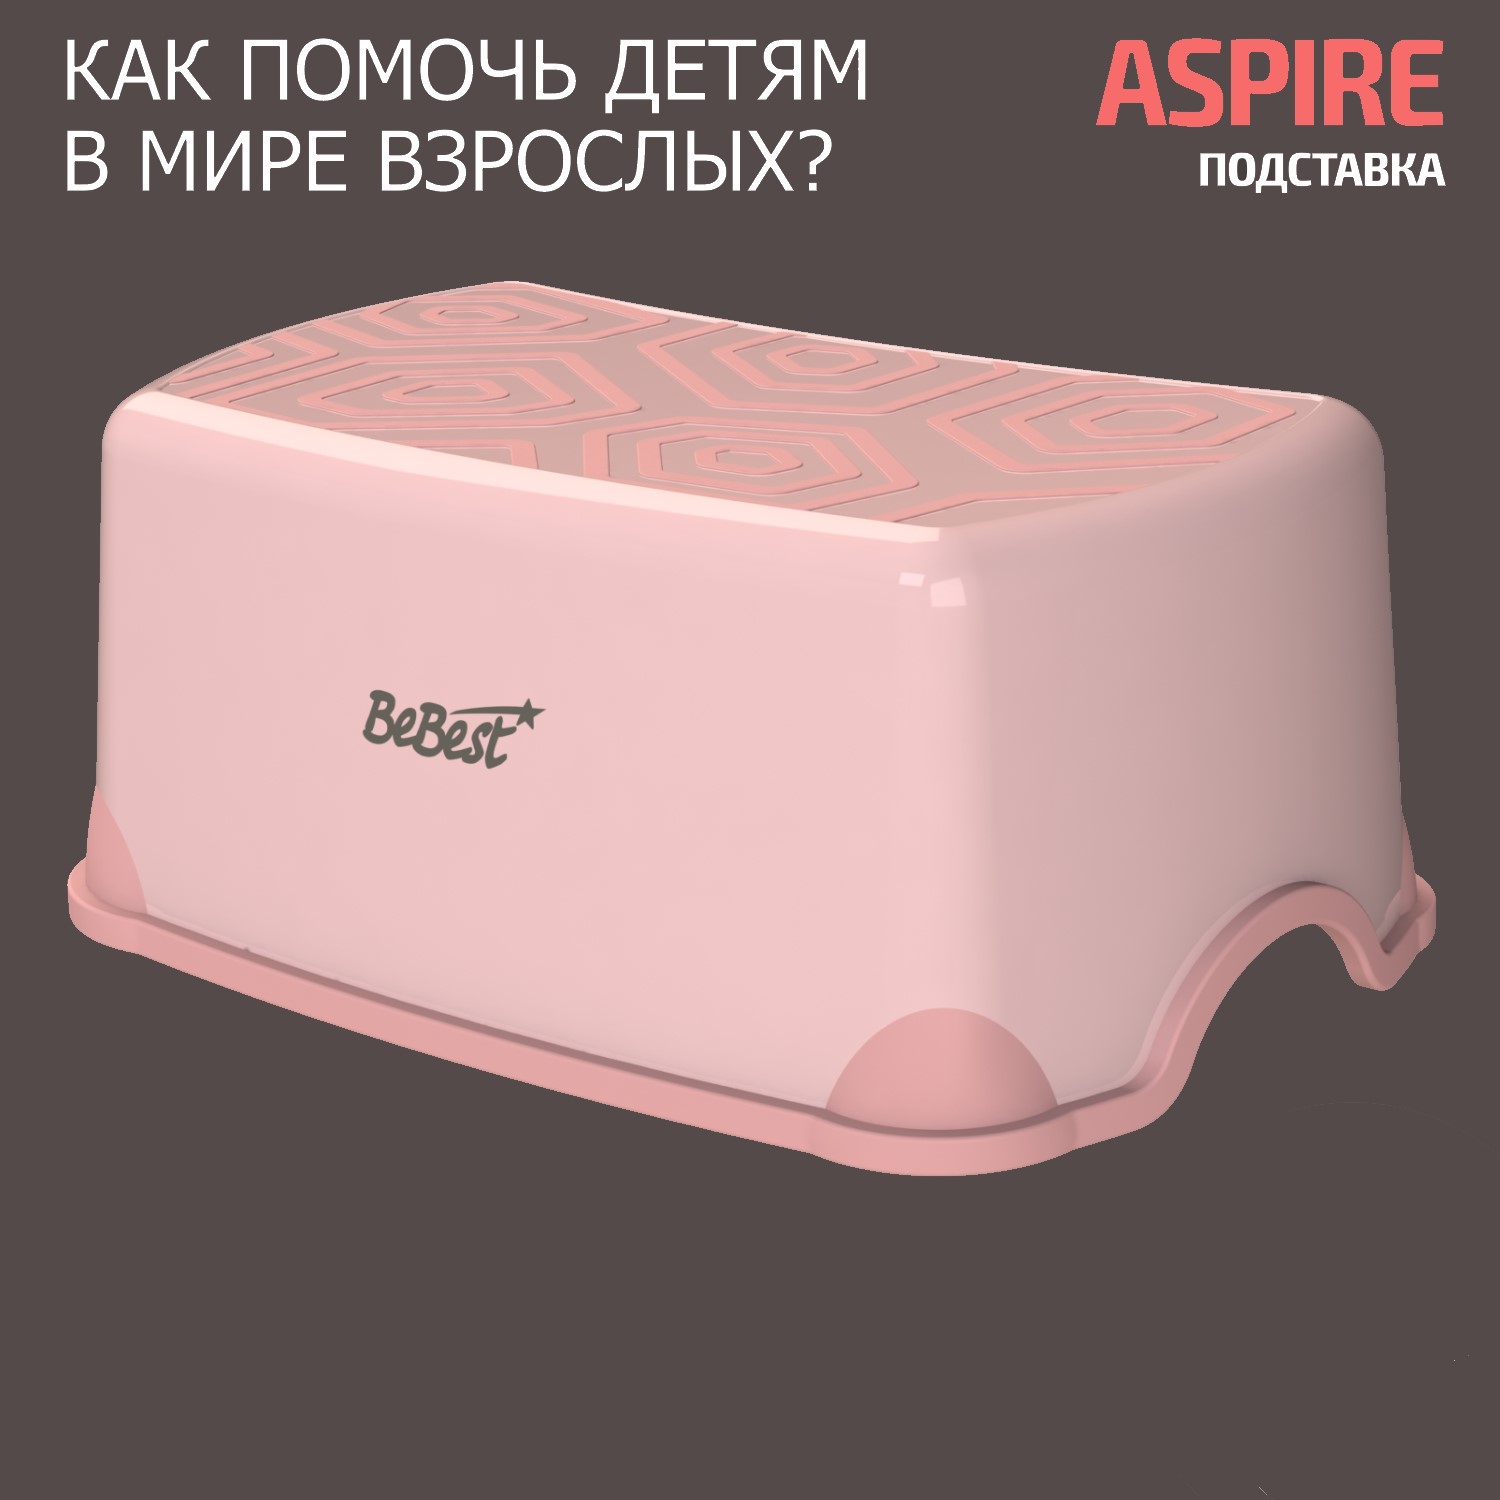 Подставка-табурет для детей BeBest Aspire розовый